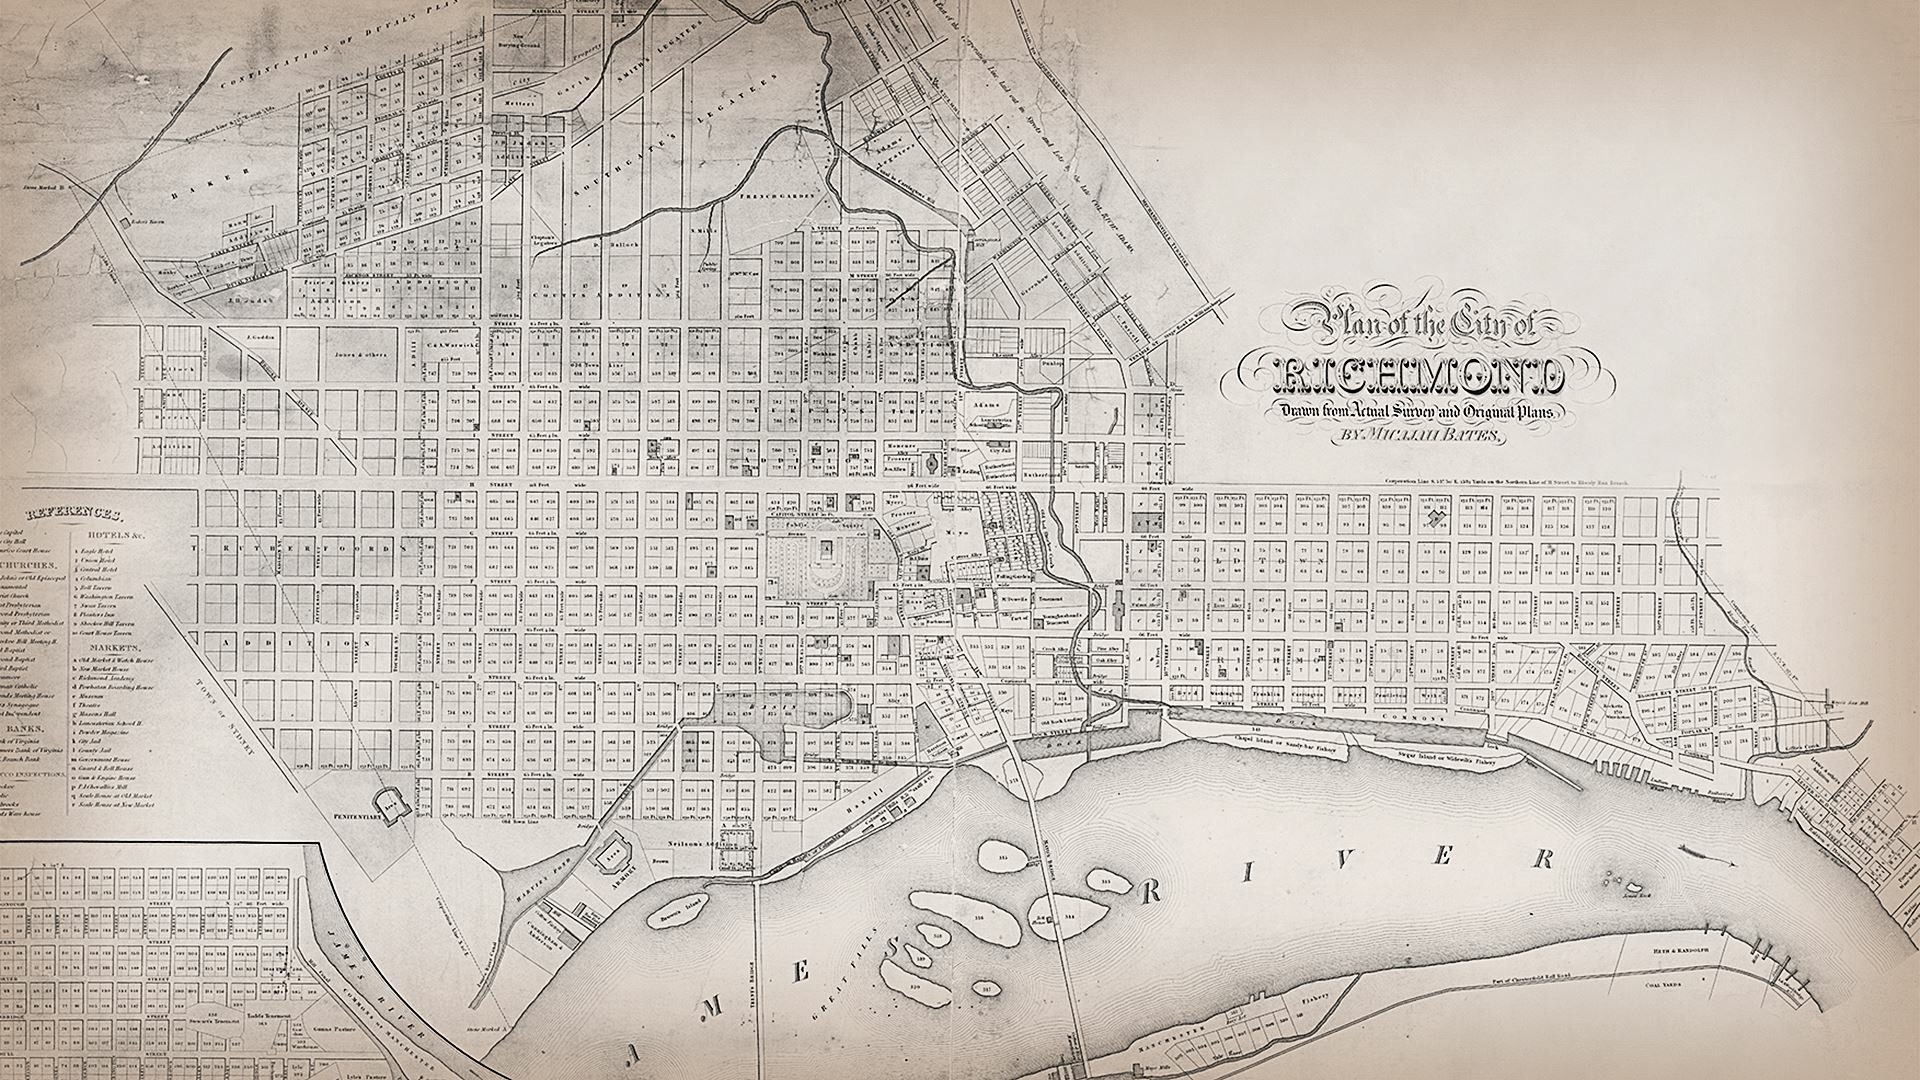 1800s era map of Richmond.